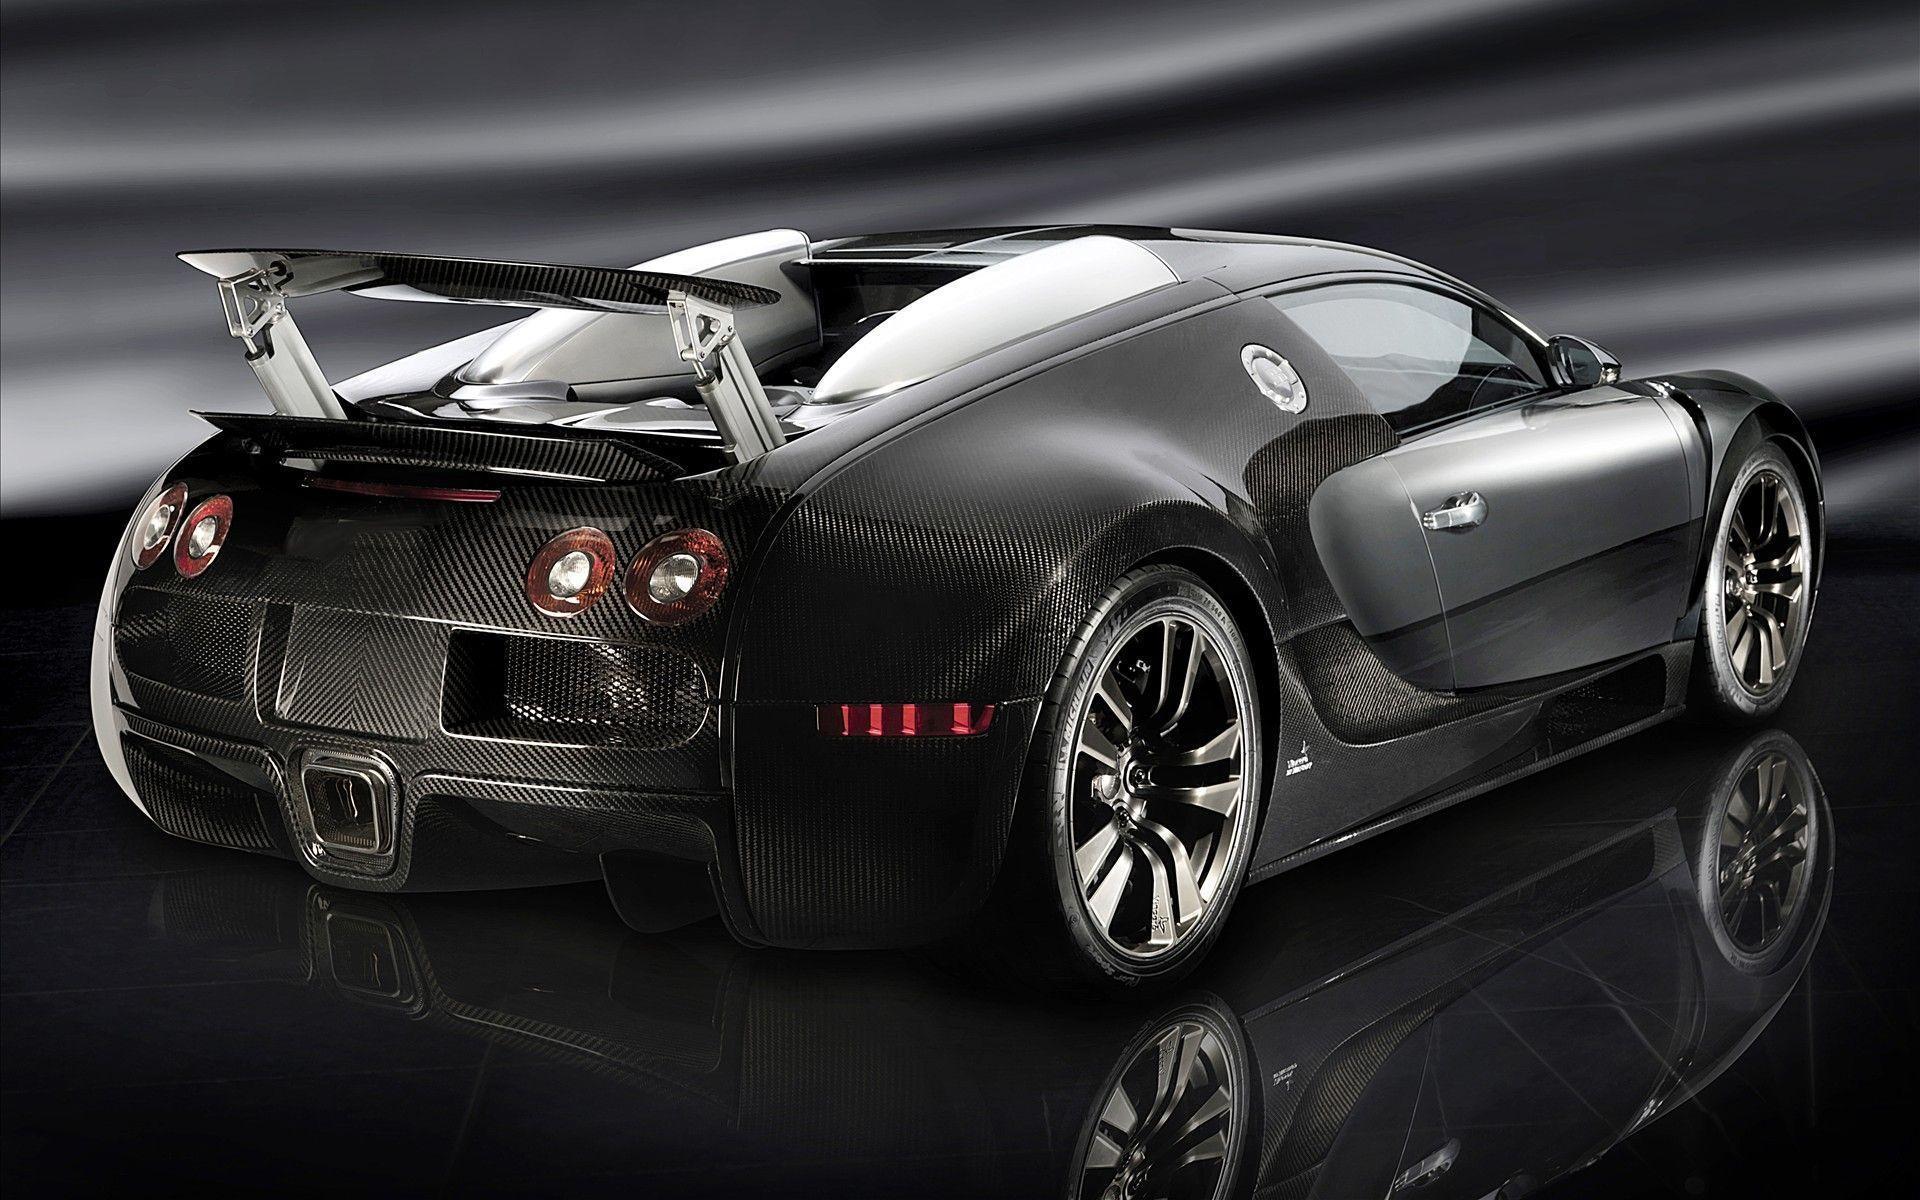 Black Bugatti Veyron HD Wallpaper Free Black Bugatti Veyron